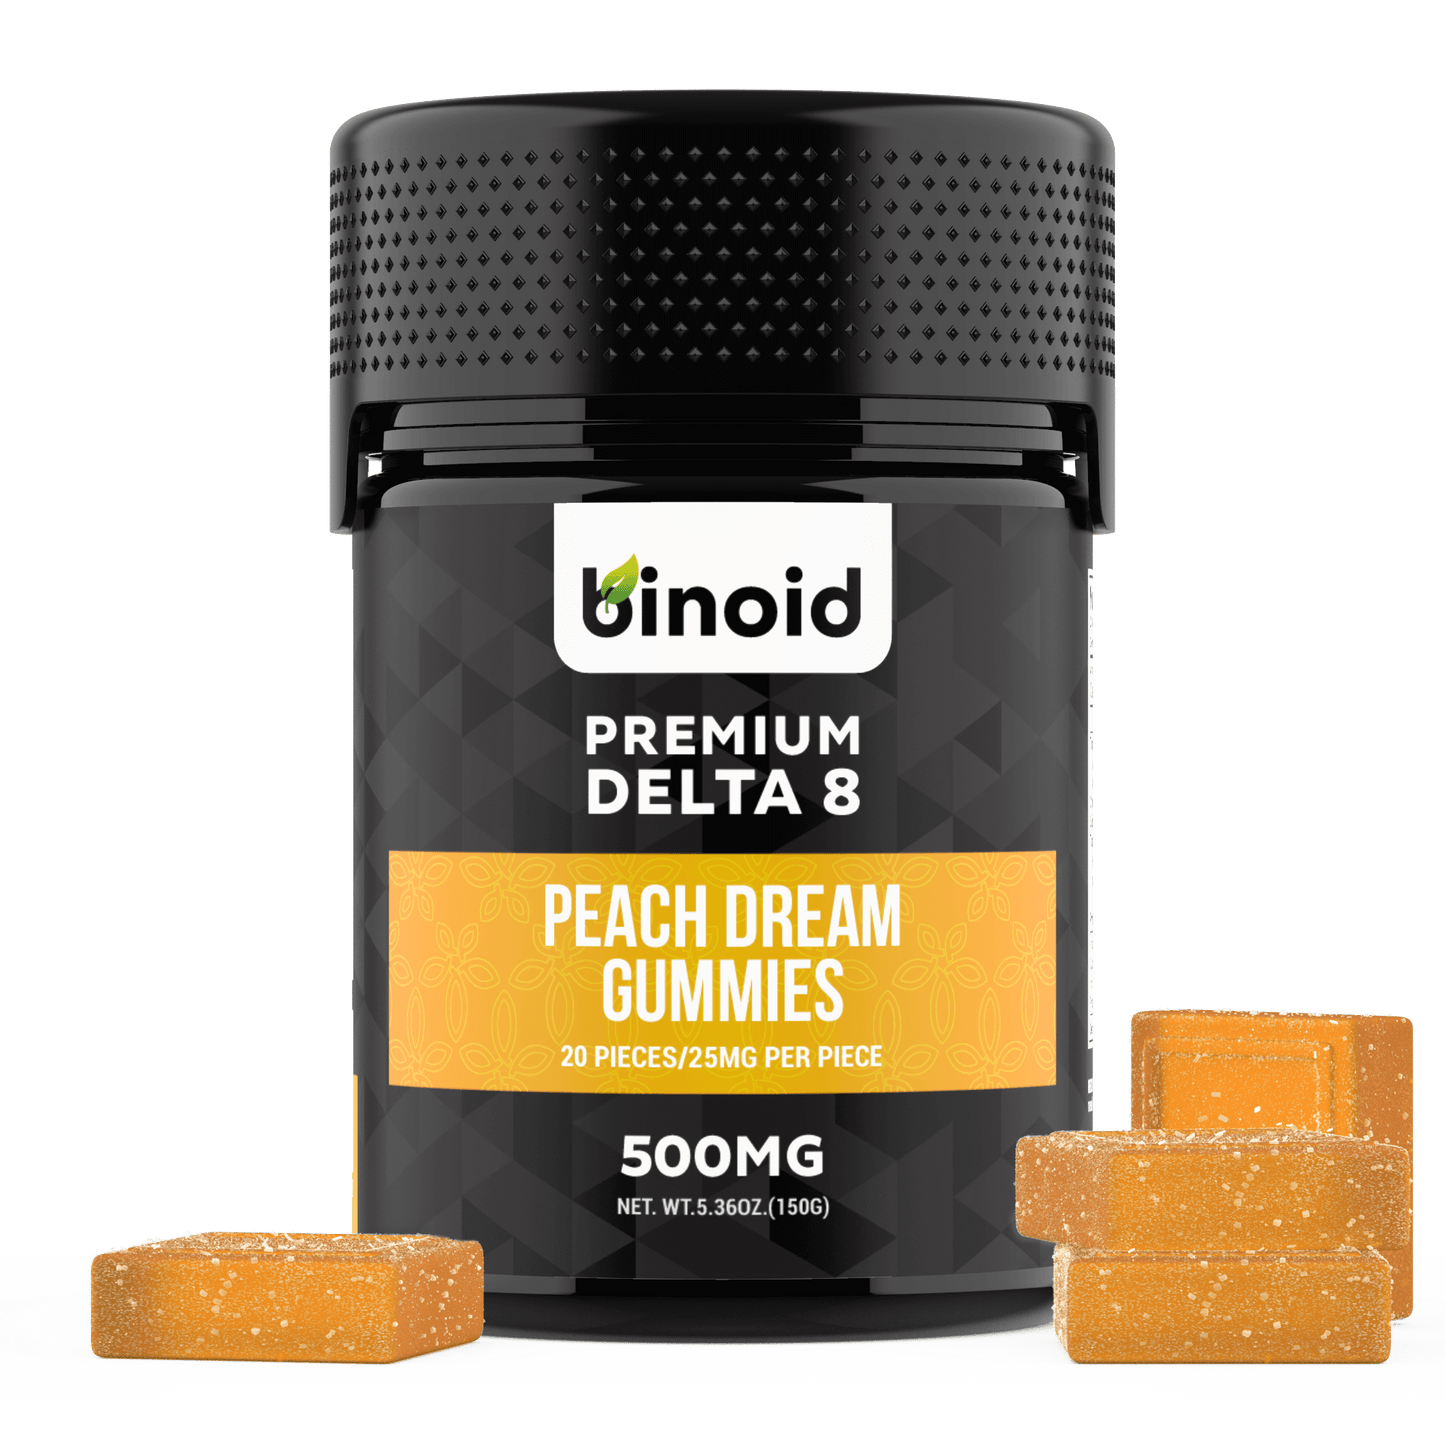 Binoid Delta 8 THC Gummies - Peach Dream Best Sales Price - Gummies